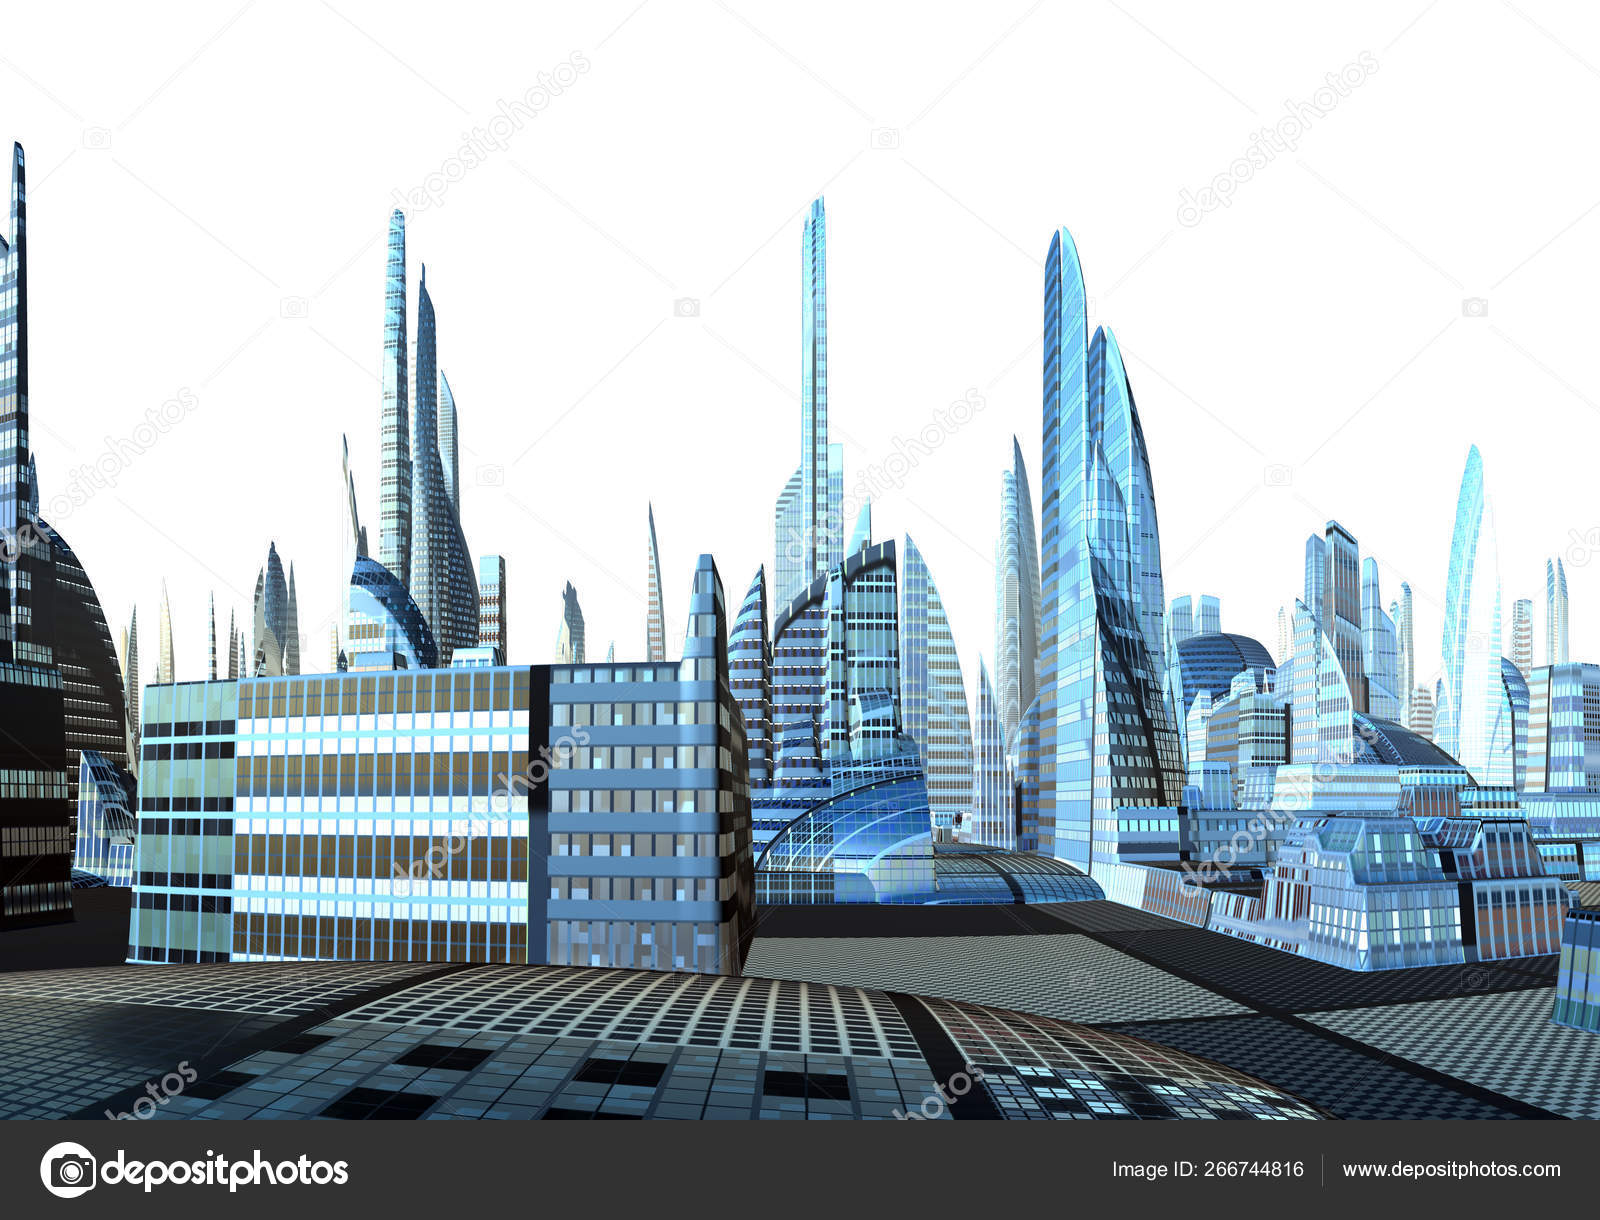 Tưởng tượng một thành phố tương lai với các tòa nhà cao tầng, xe tự hành và công nghệ tiên tiến. Bức hình này sẽ khiến bạn đắm chìm vào thế giới tươi sáng và hào nhoáng của một thành phố tương lai.